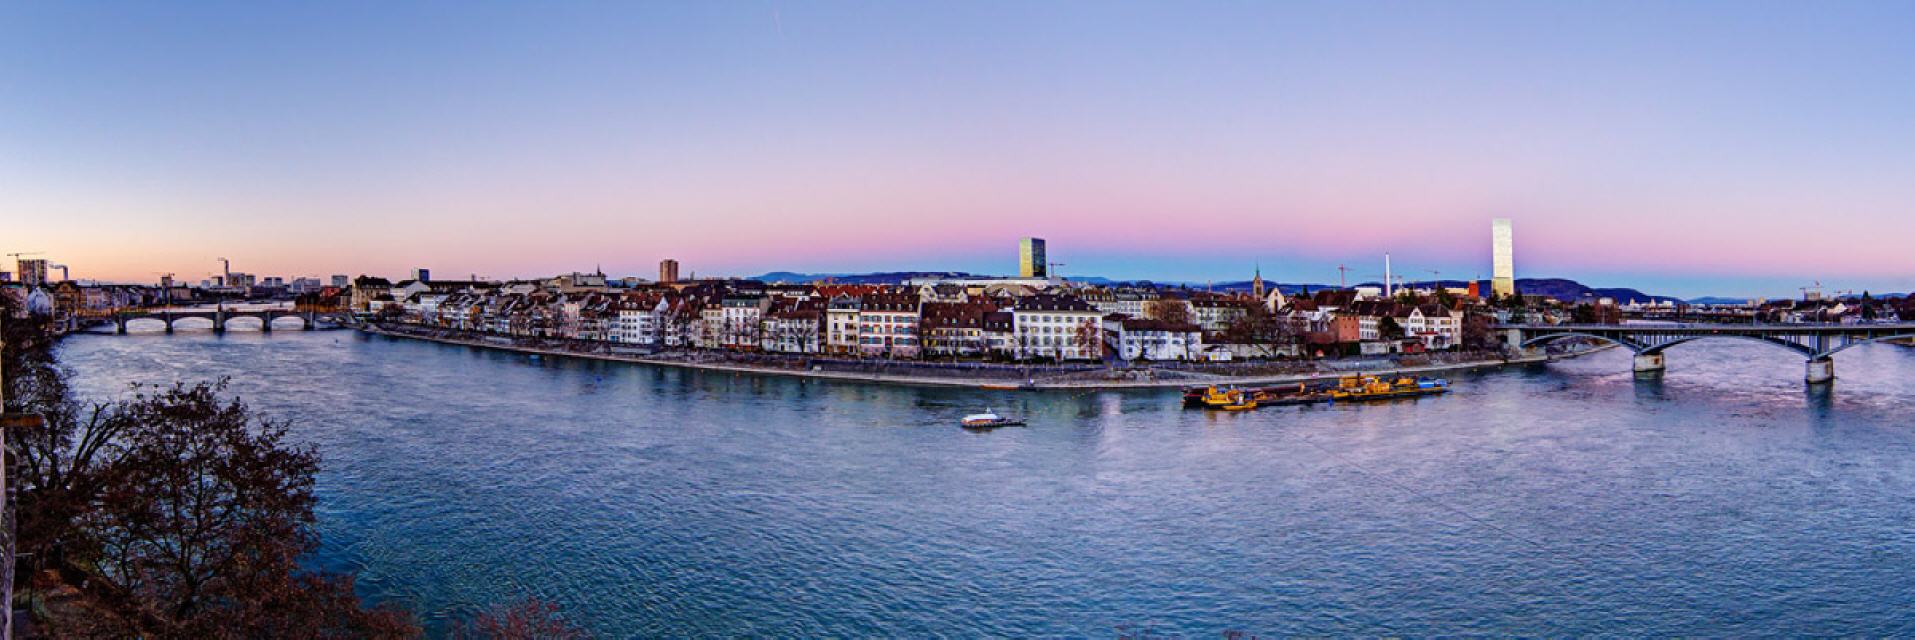 Basel: Blick von der Pfalz an einem Novemberabend